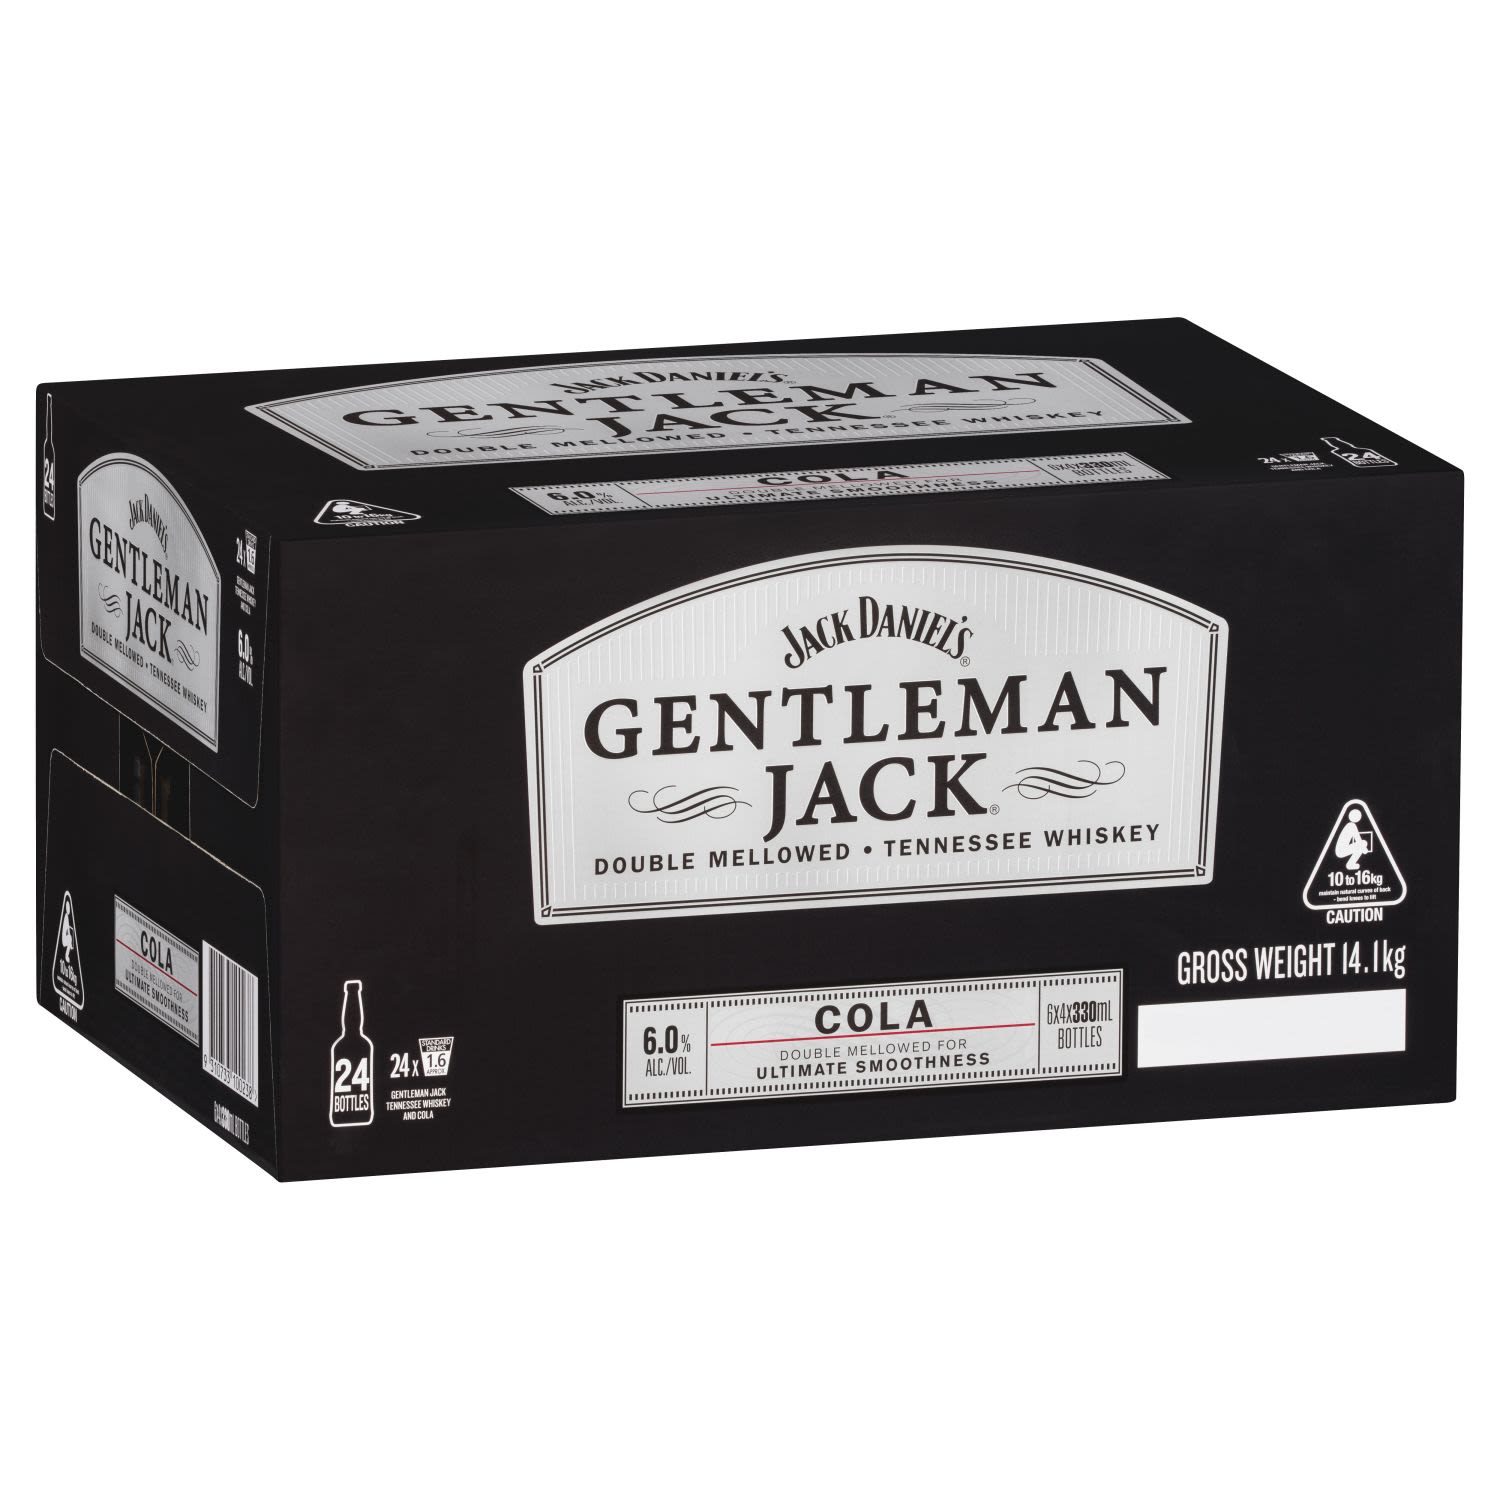 Jack Daniel's Gentleman Jack&Cola 330mL<br /> <br />Alcohol Volume: 6.00%<br /><br />Pack Format: 24 Pack<br /><br />Standard Drinks: 1.6</br /><br />Pack Type: Bottle<br />